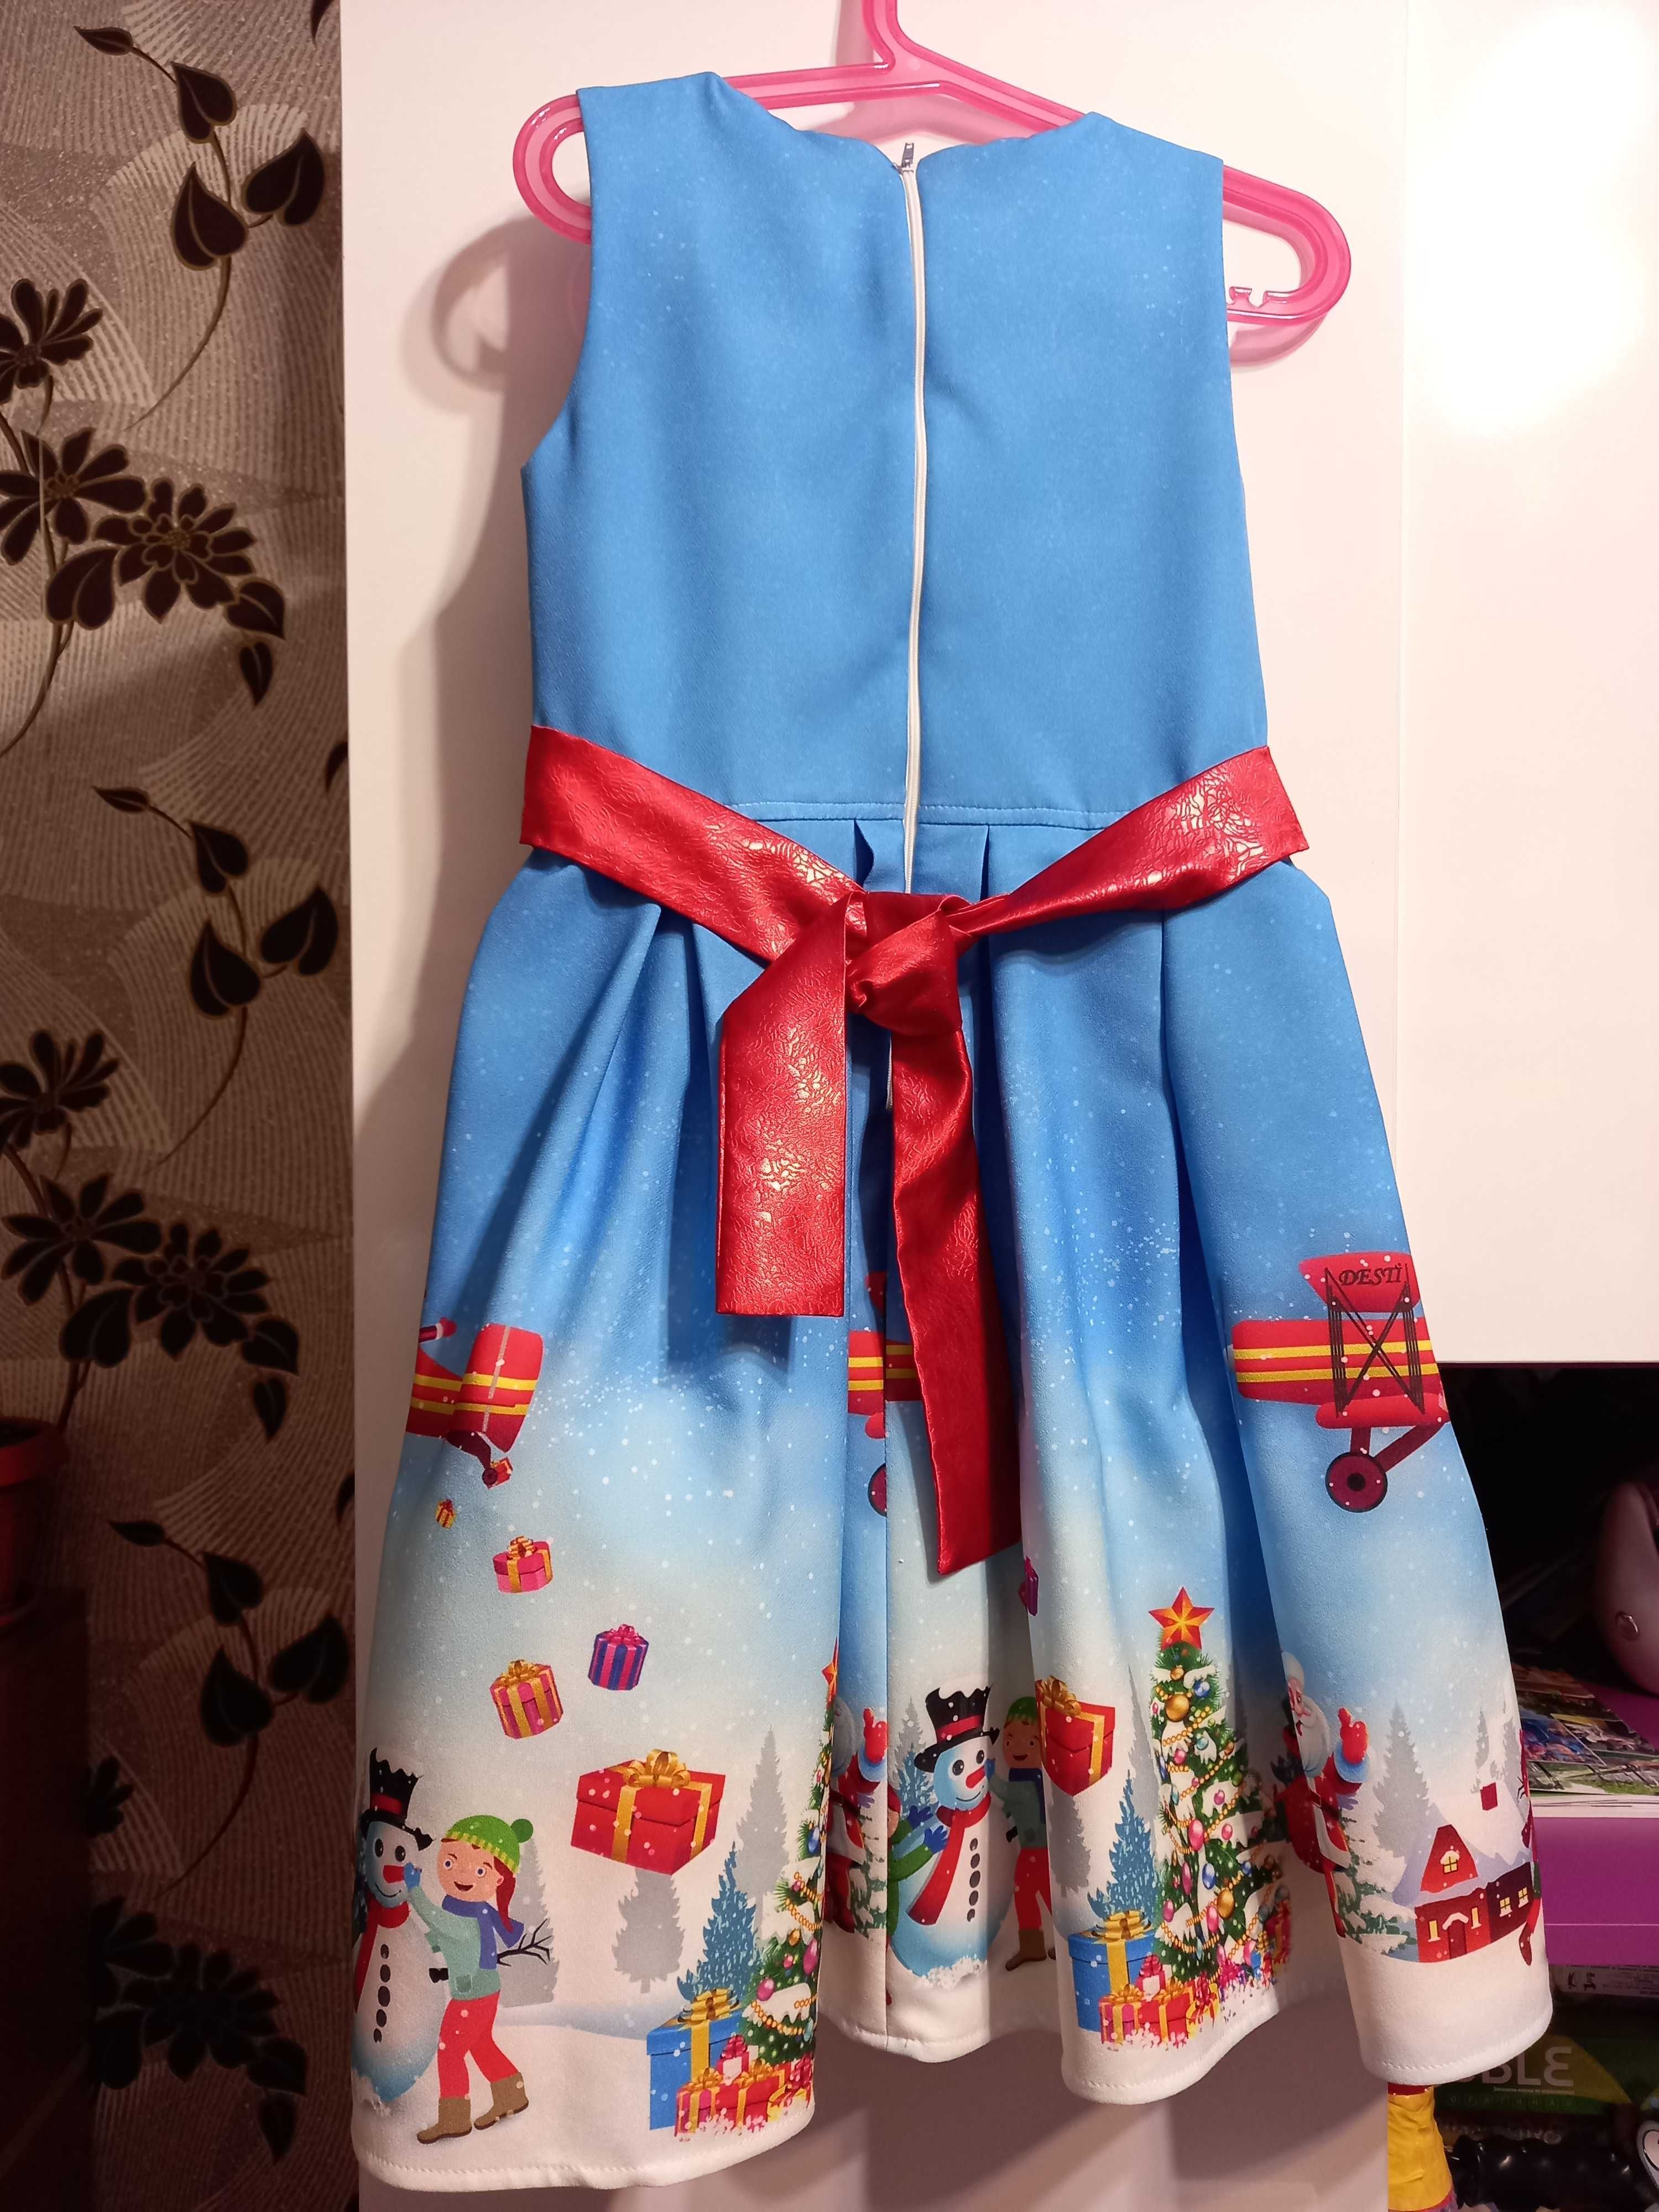 Коледна рокля за момиче - 128 размер